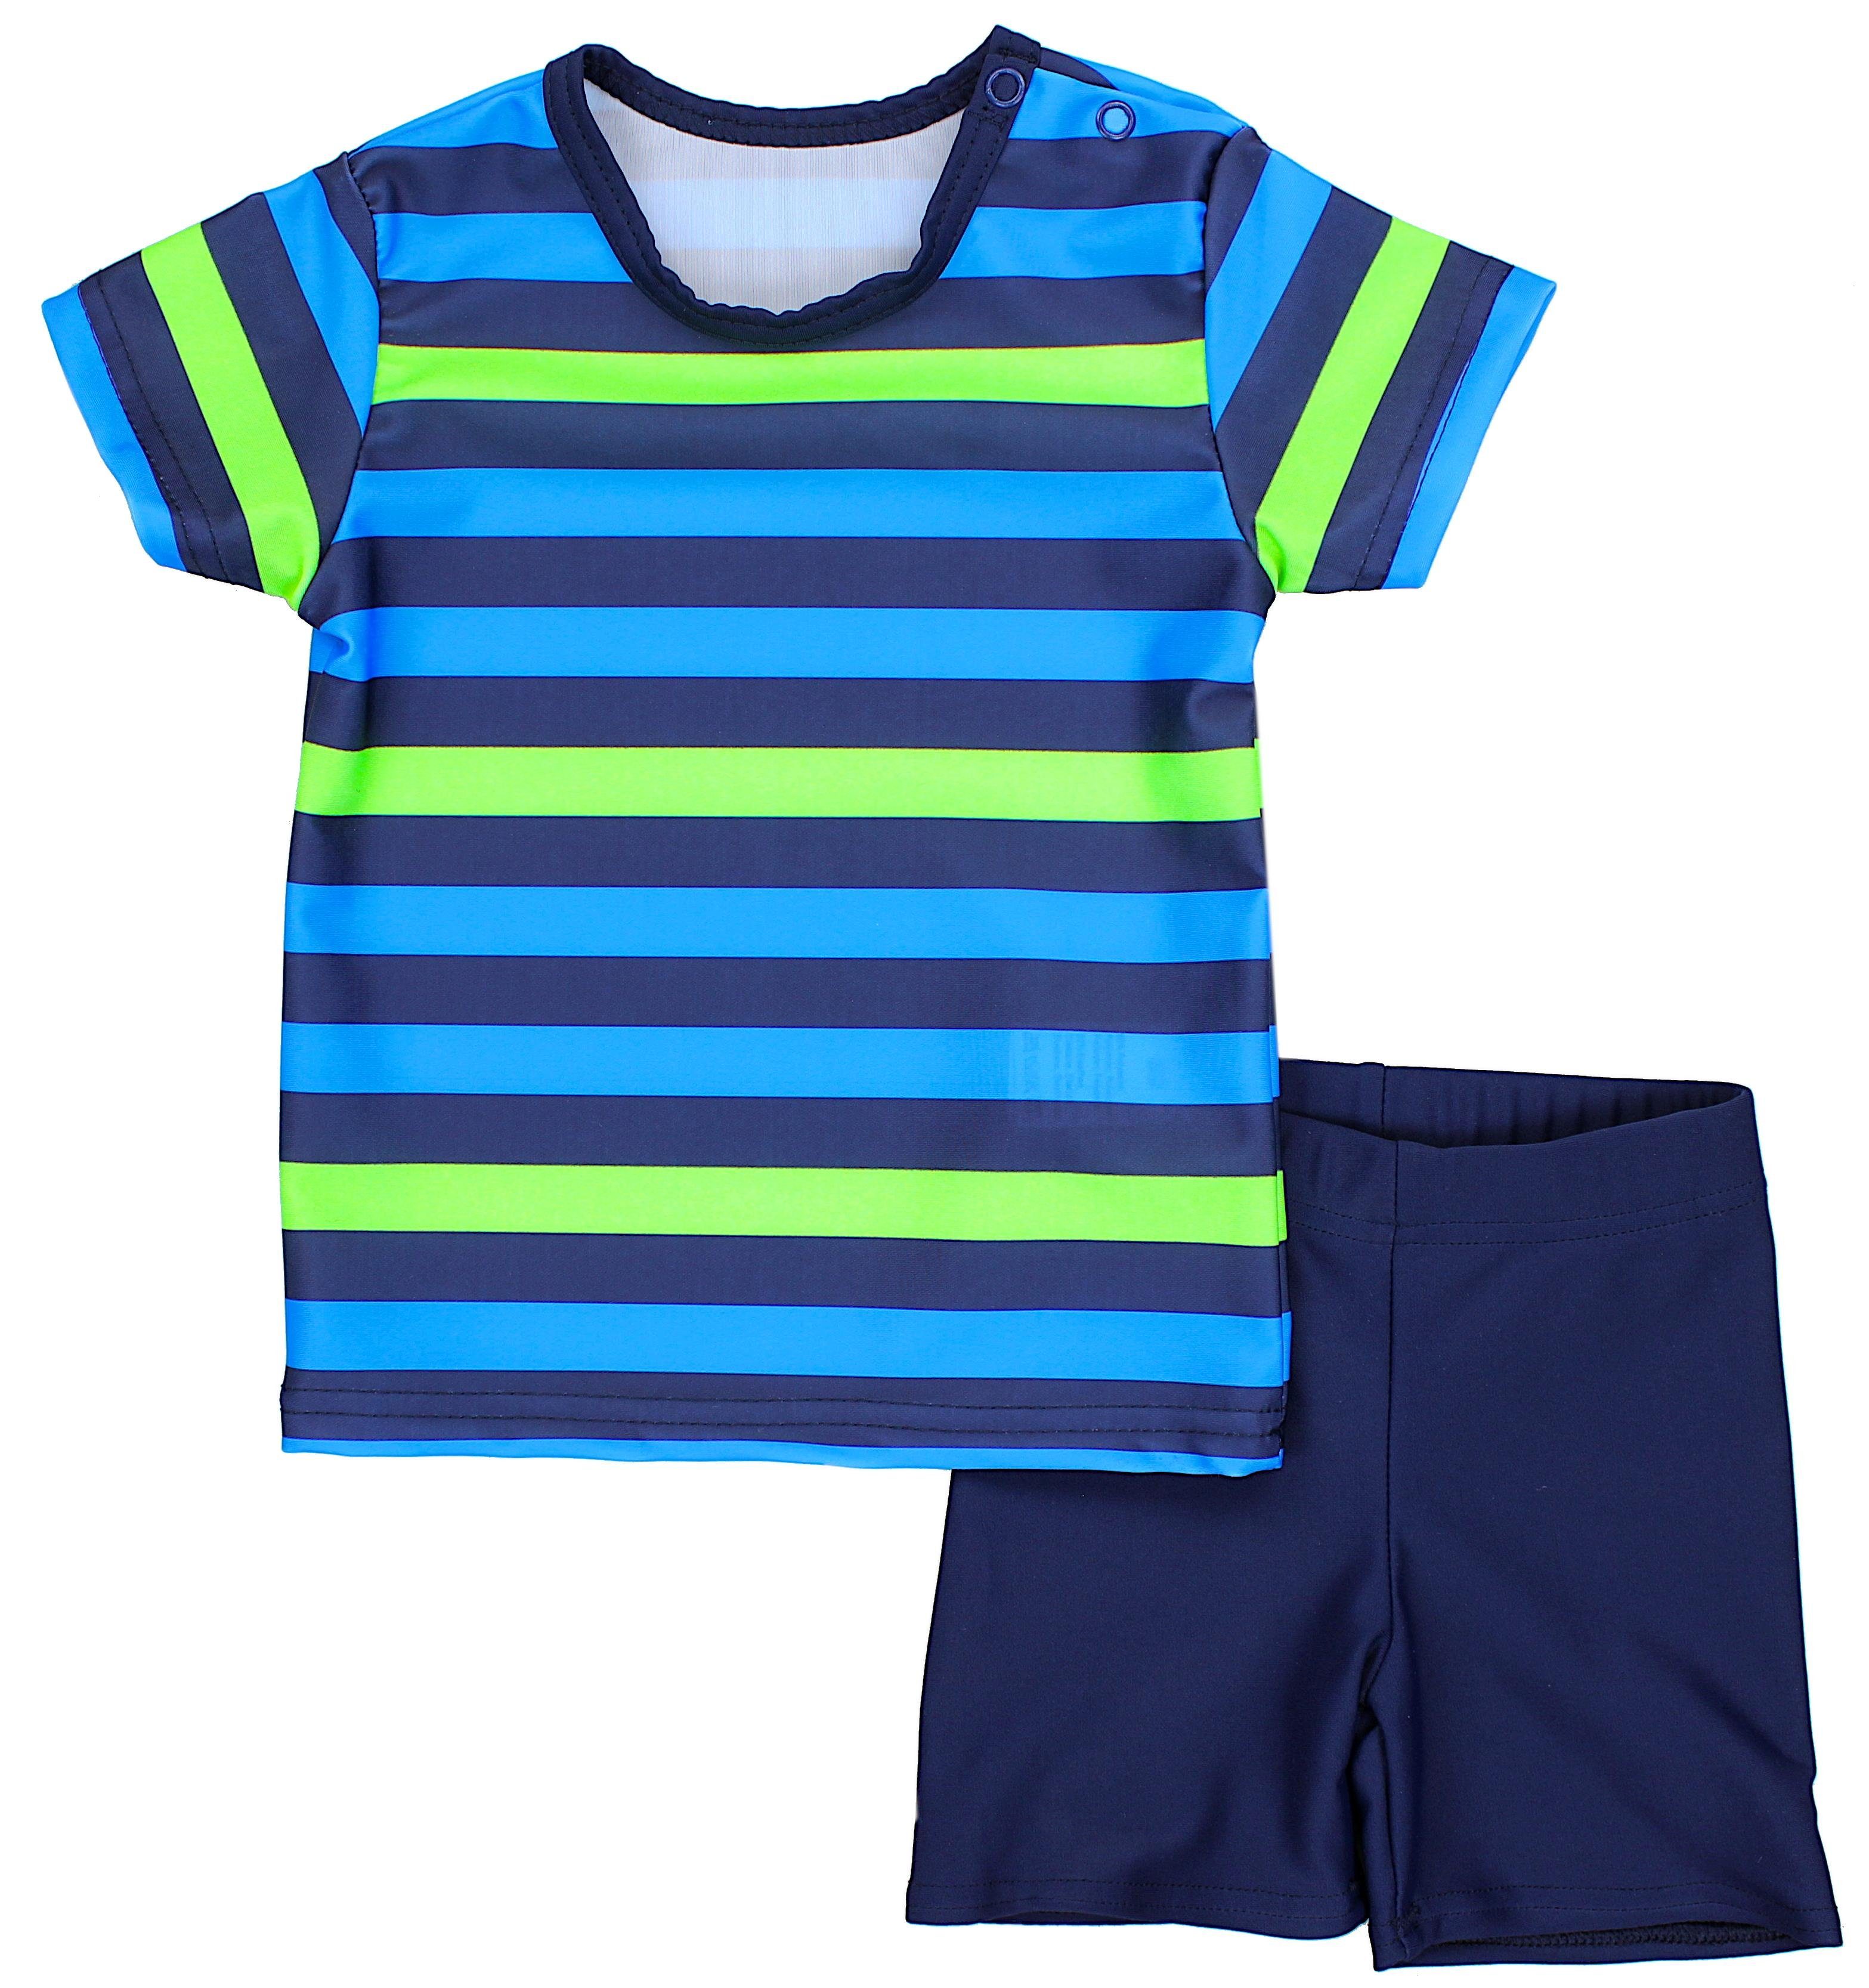 Aquarti Badeanzug Baby Jungen Zweiteiliger Kinder Badeanzug T-Shirt Badehose UV-Schutz Streifen Blau / Grün / Dunkelblau